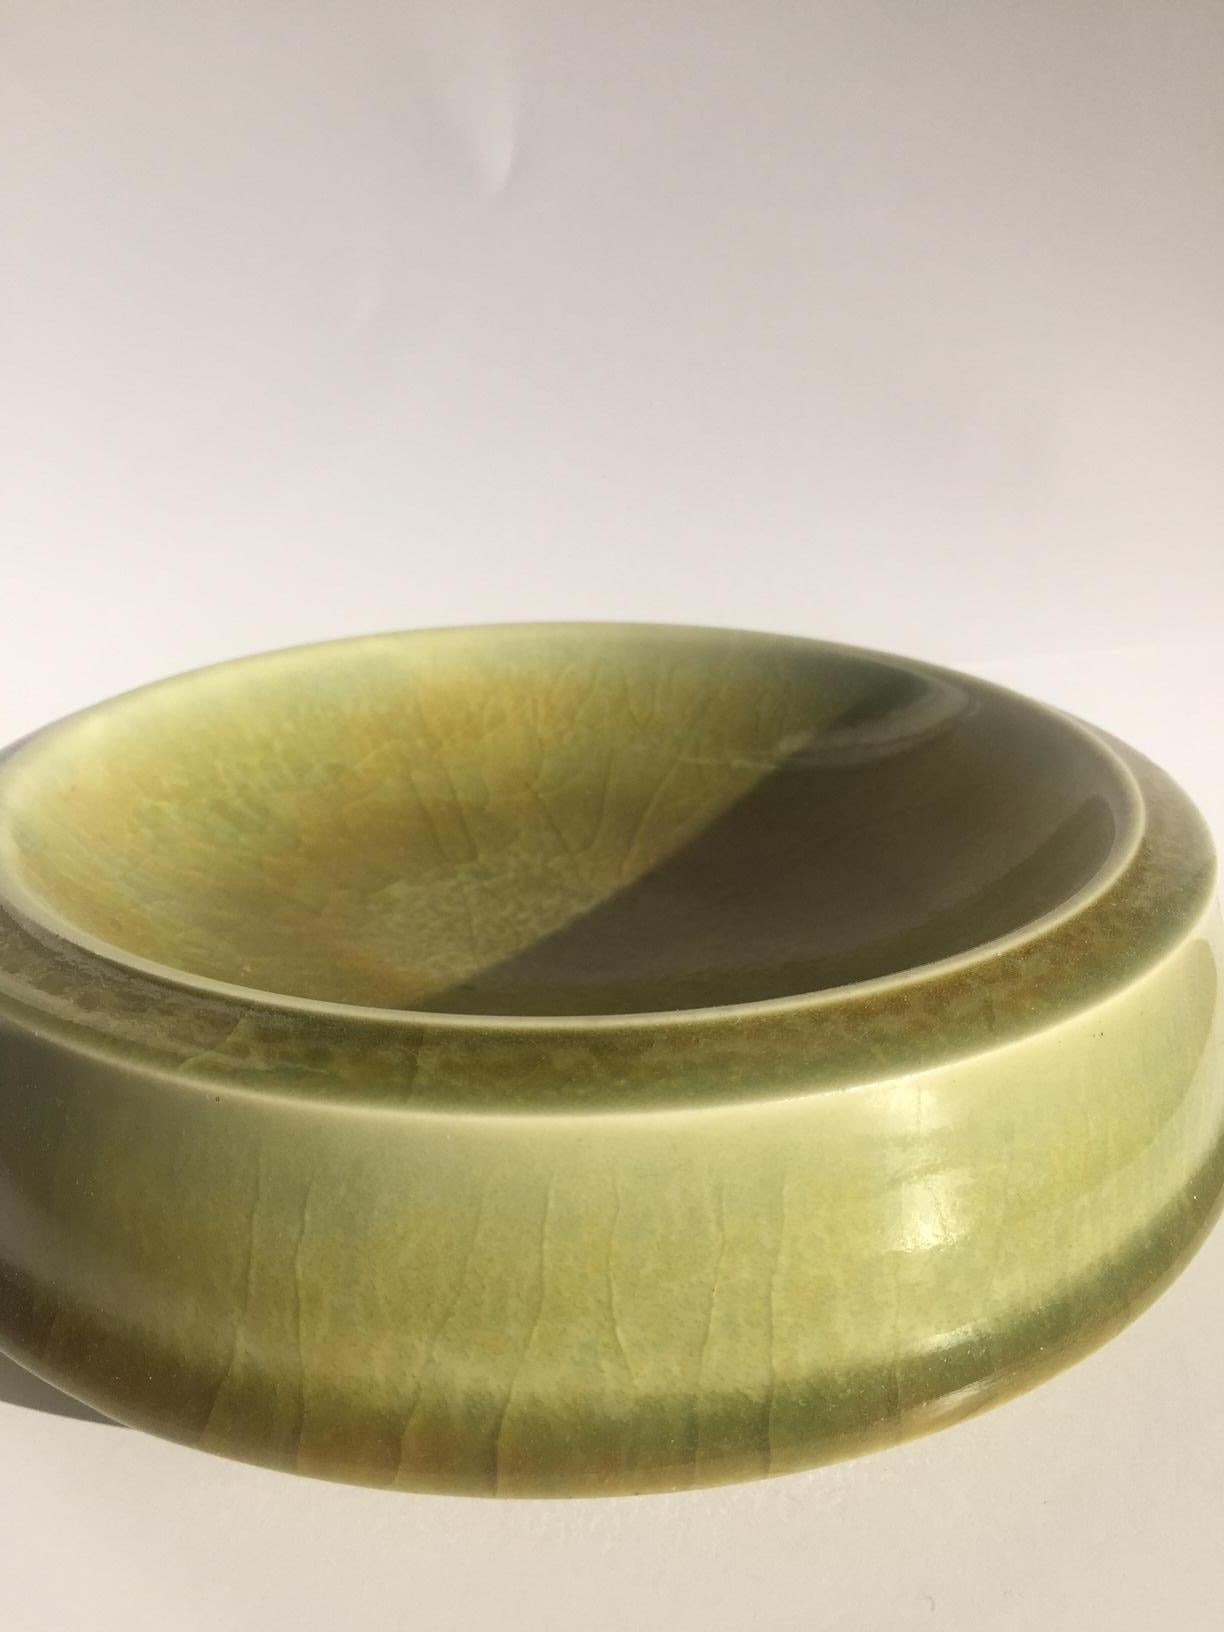 Sèvre -Cup

Tasse en porcelaine de couleur verte
Manufacture de Sèvres, daté de 1962
Décor en nuances de vert par Bernard Bannier.

Mesures : H 5,5 cm / 2,2 in.
Ø 18 cm / 7 in.